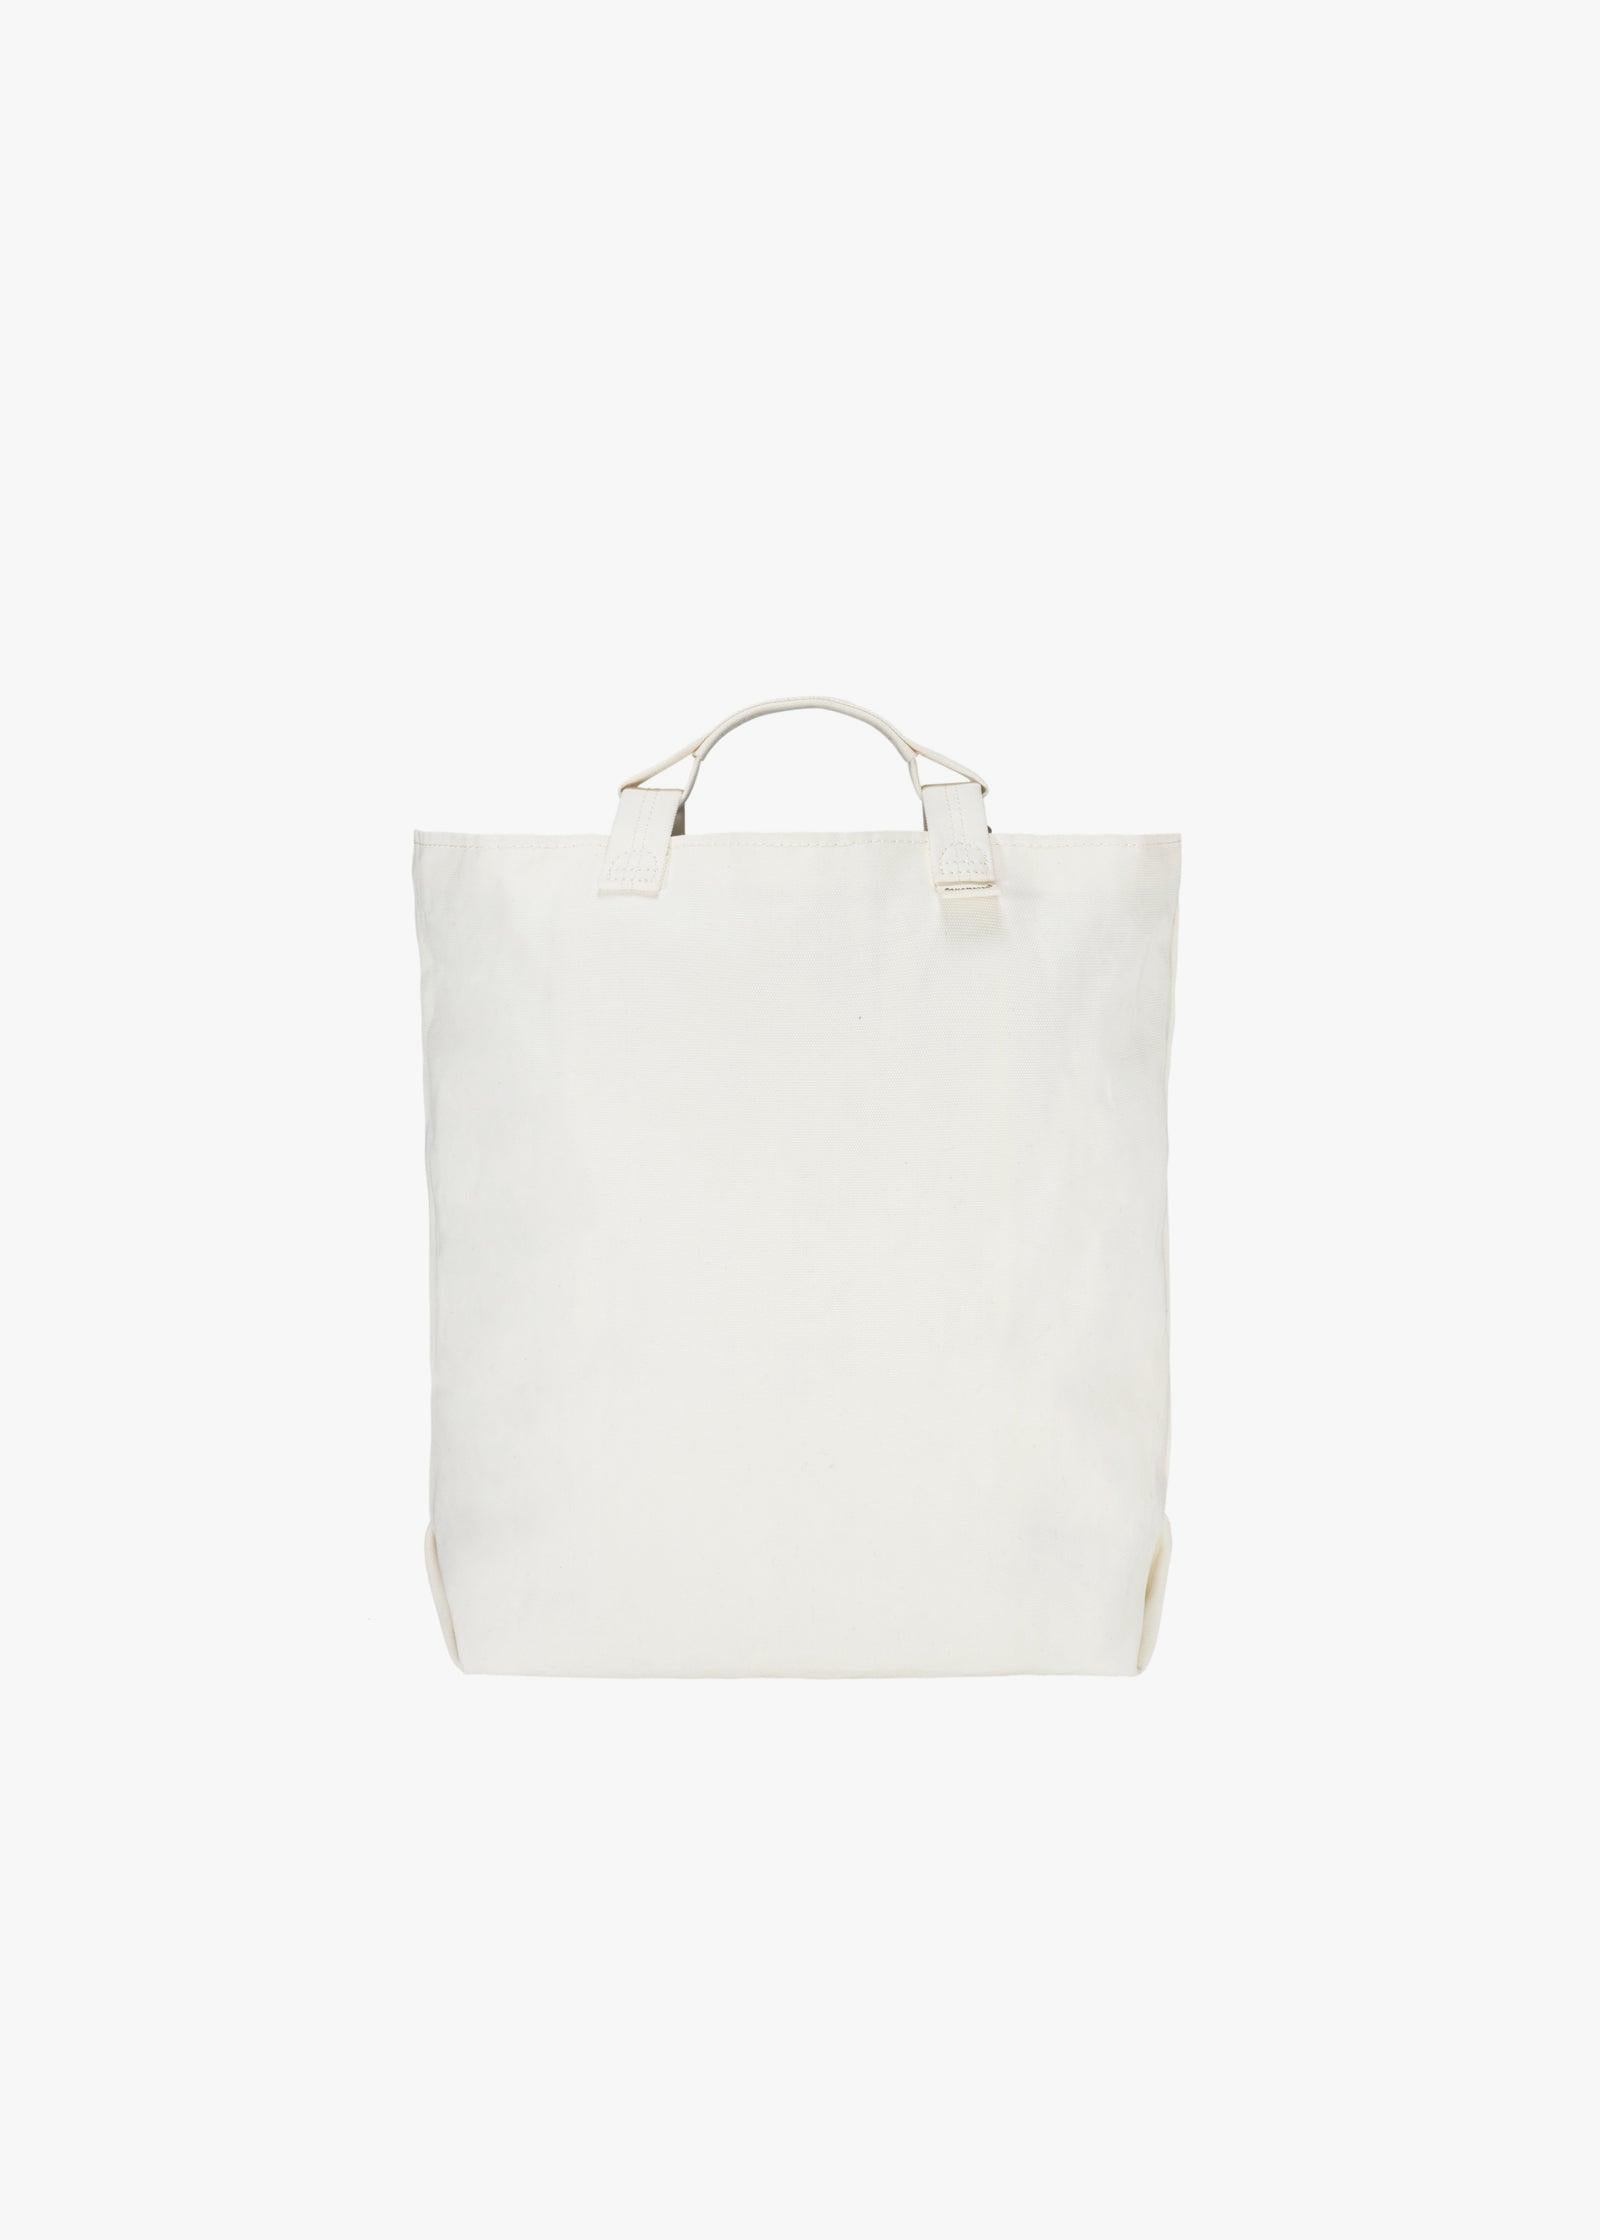 Bananatex Tote Bag Medium – Natural White / Desert Hawk